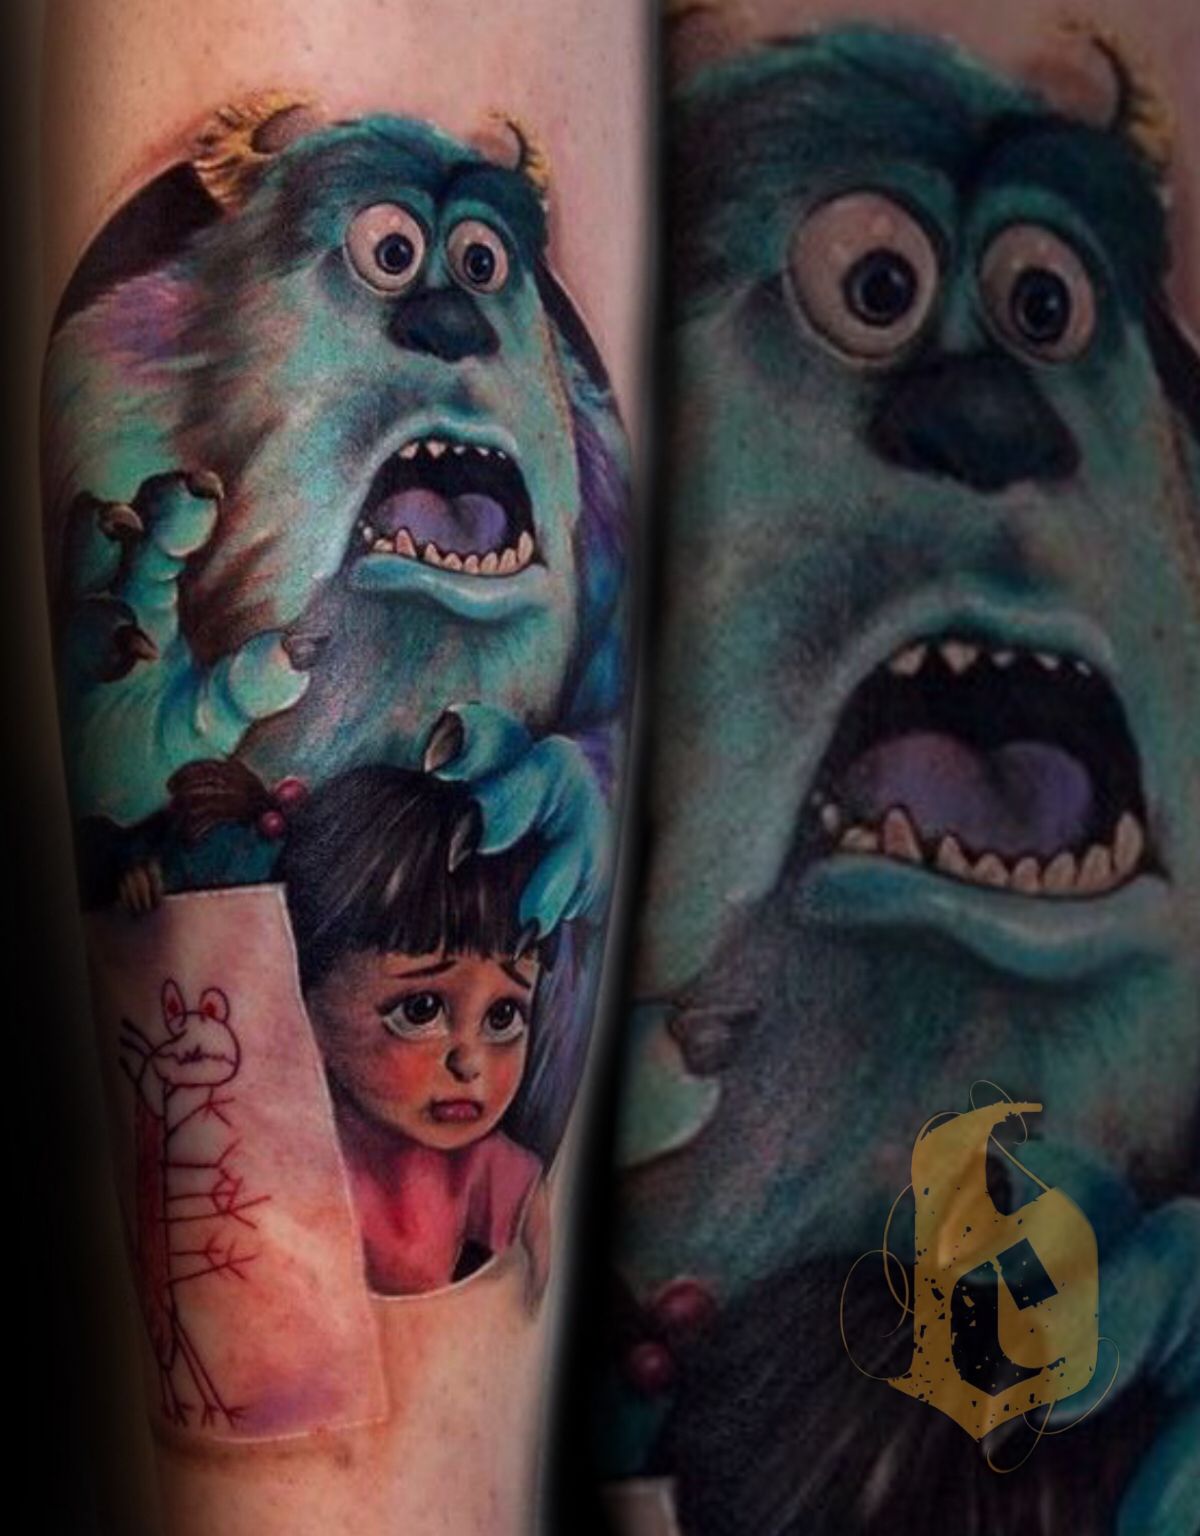 img/monster-face-arm-tattoo.jpg